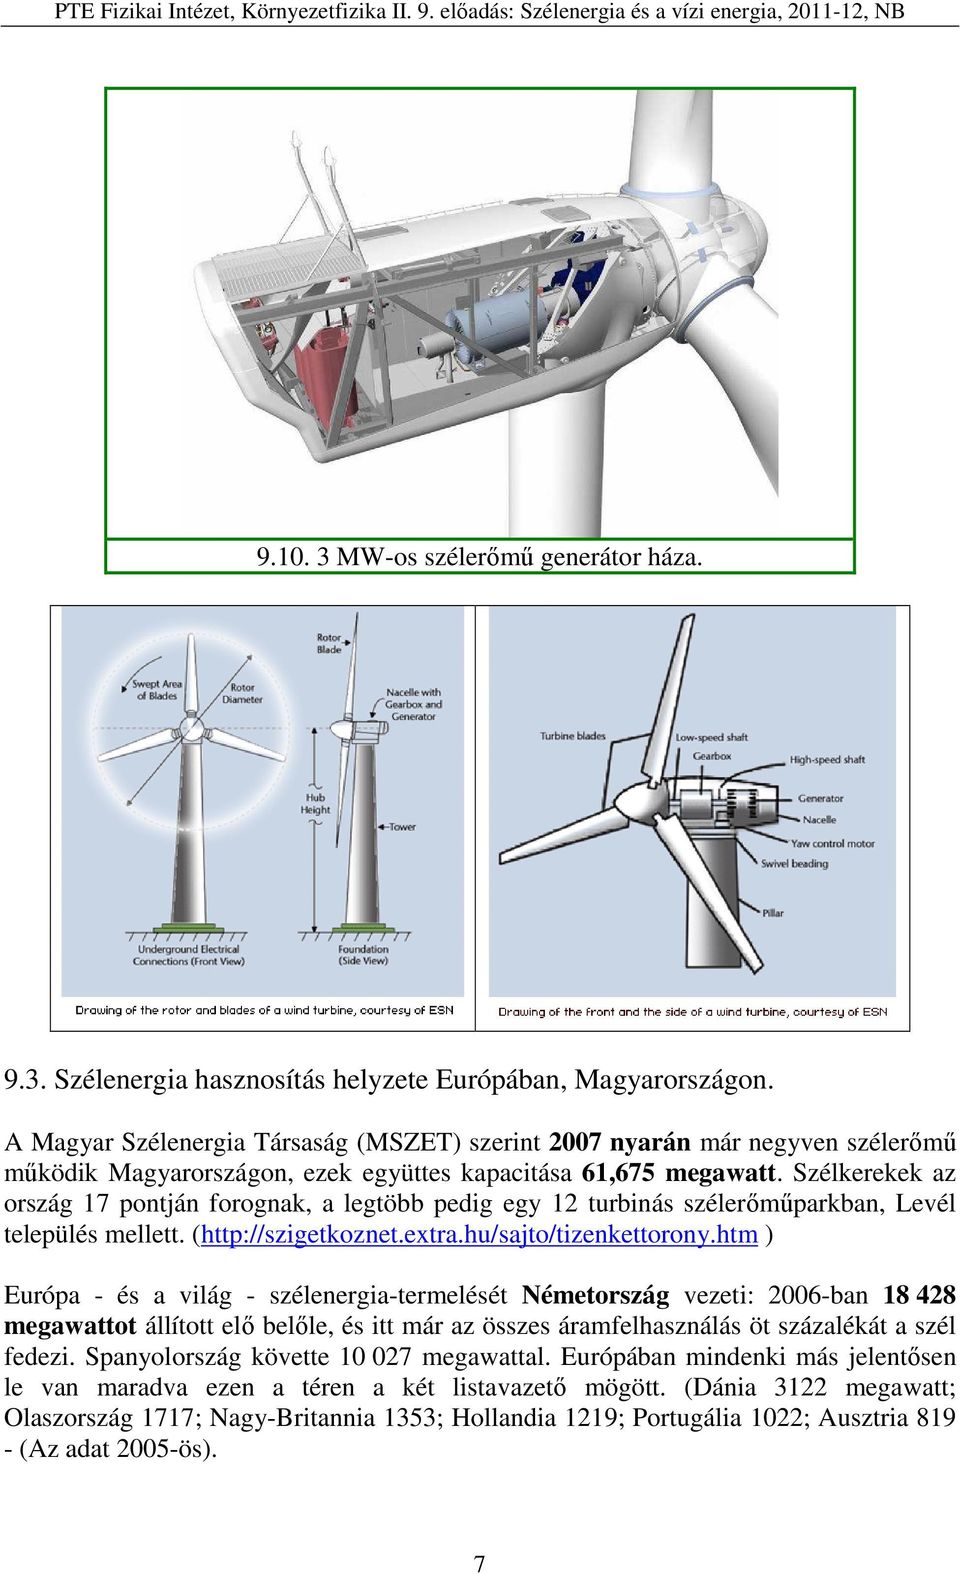 Szélkerekek az ország 17 pontján forognak, a legtöbb pedig egy 12 turbinás szélerőműparkban, Levél település mellett. (http://szigetkoznet.extra.hu/sajto/tizenkettorony.